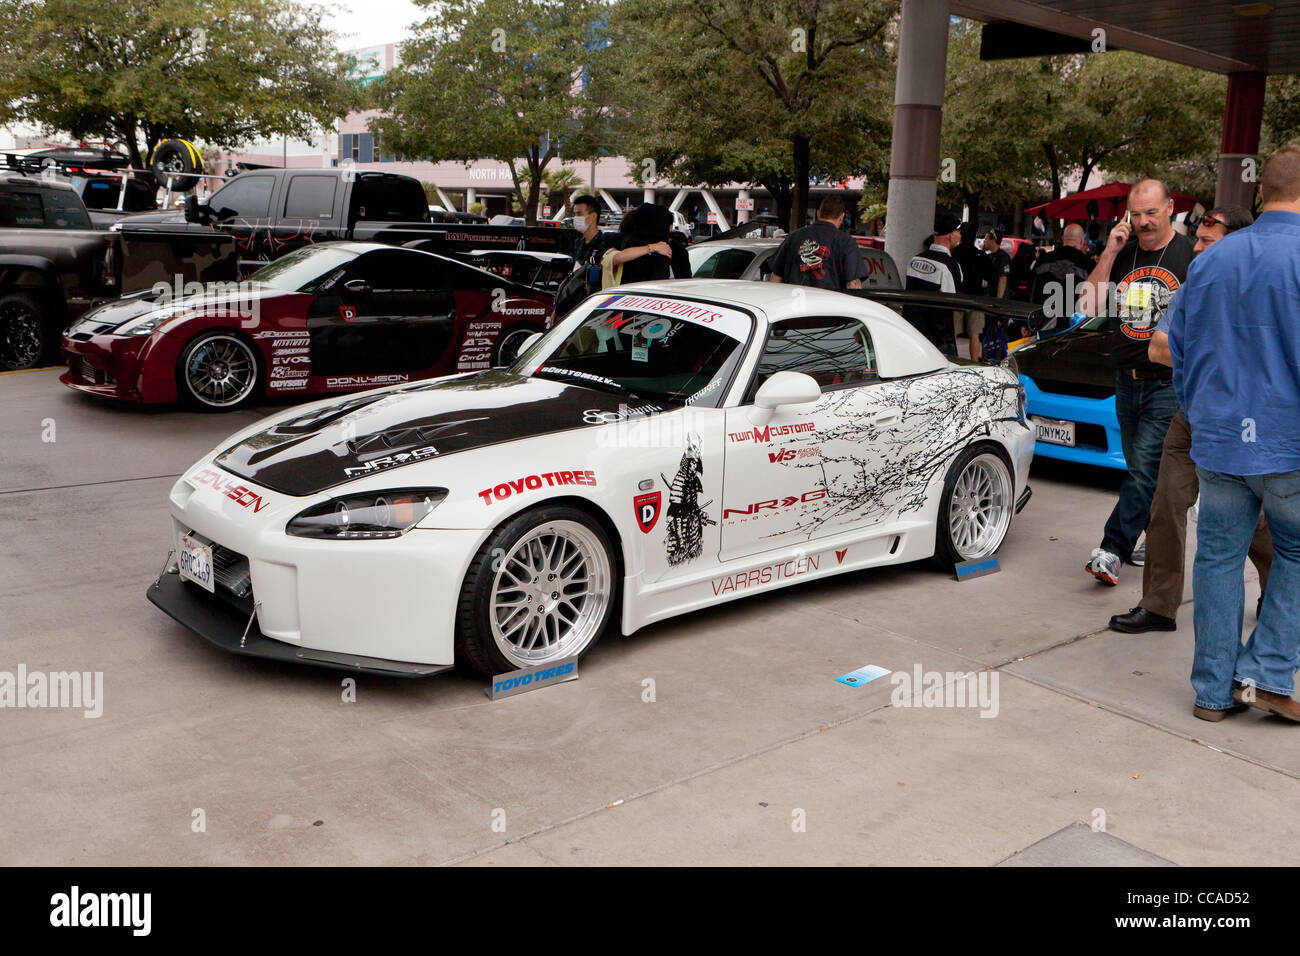 Voiture de sport Mazda Miata sur l'affichage à l'exposition de voiture Banque D'Images